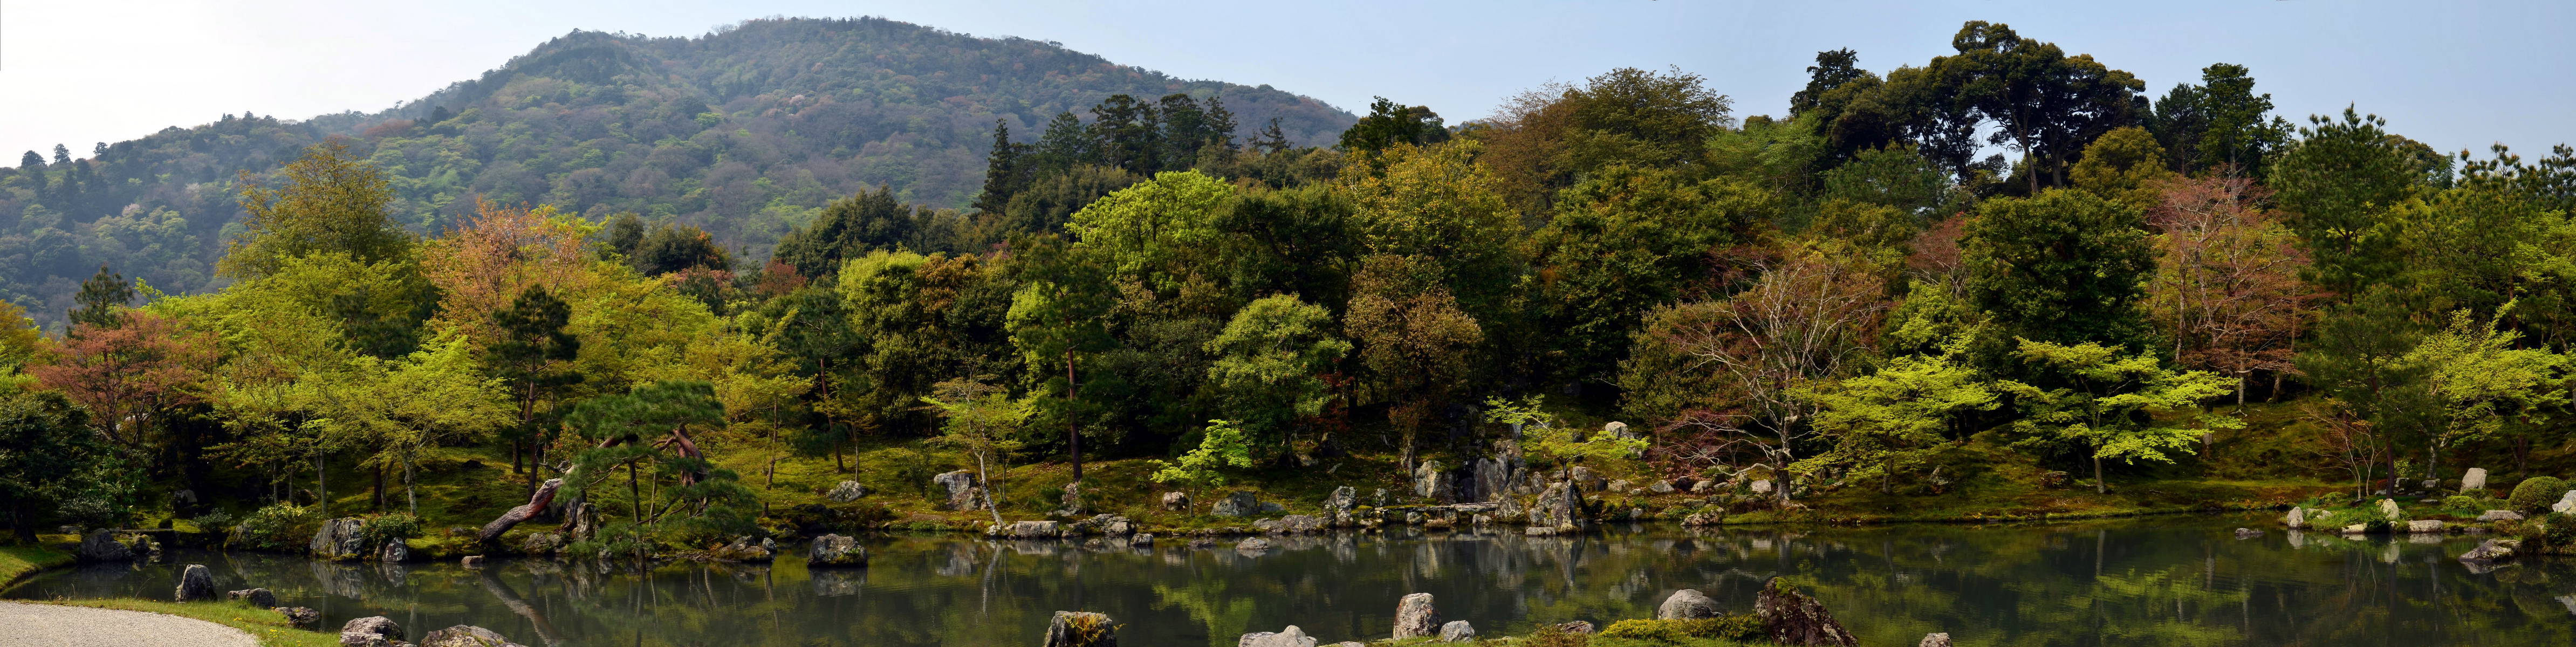 Tenryu-ji garden - Arashiyama - Kyoto - Japan.jpg